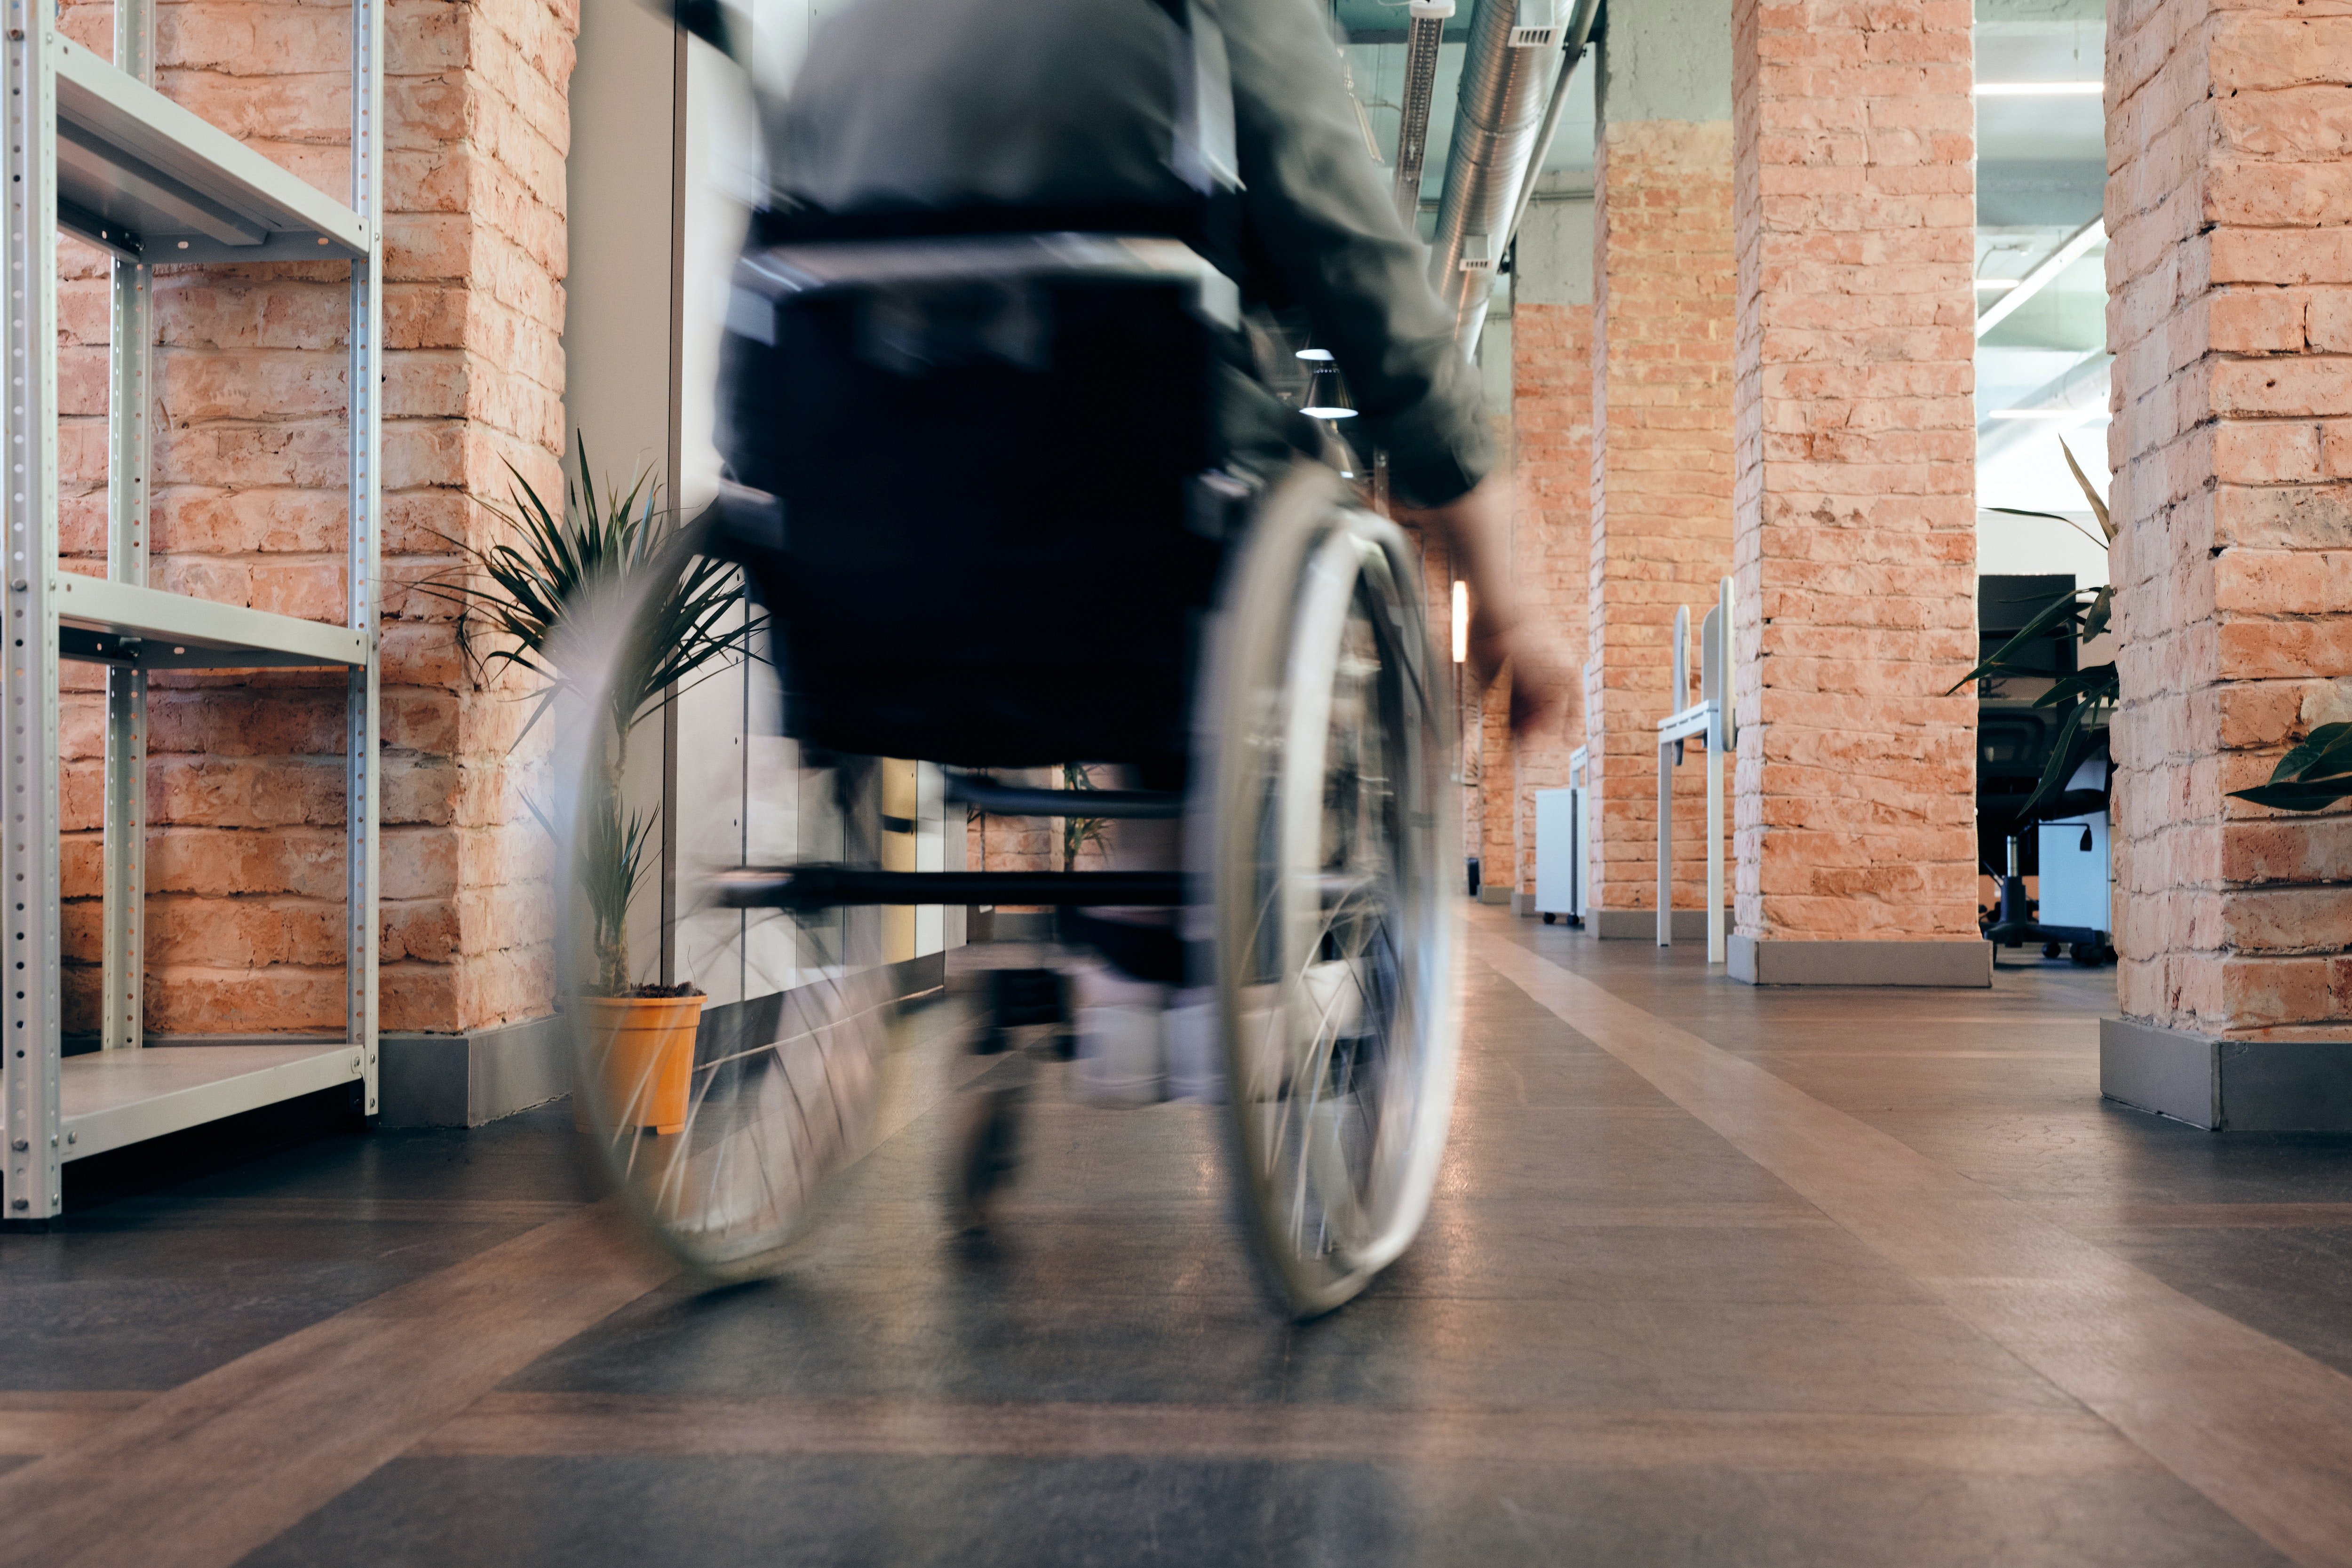 Ein älterer Mann in einem Rollstuhl betrat das Restaurant. | Quelle: Pexels